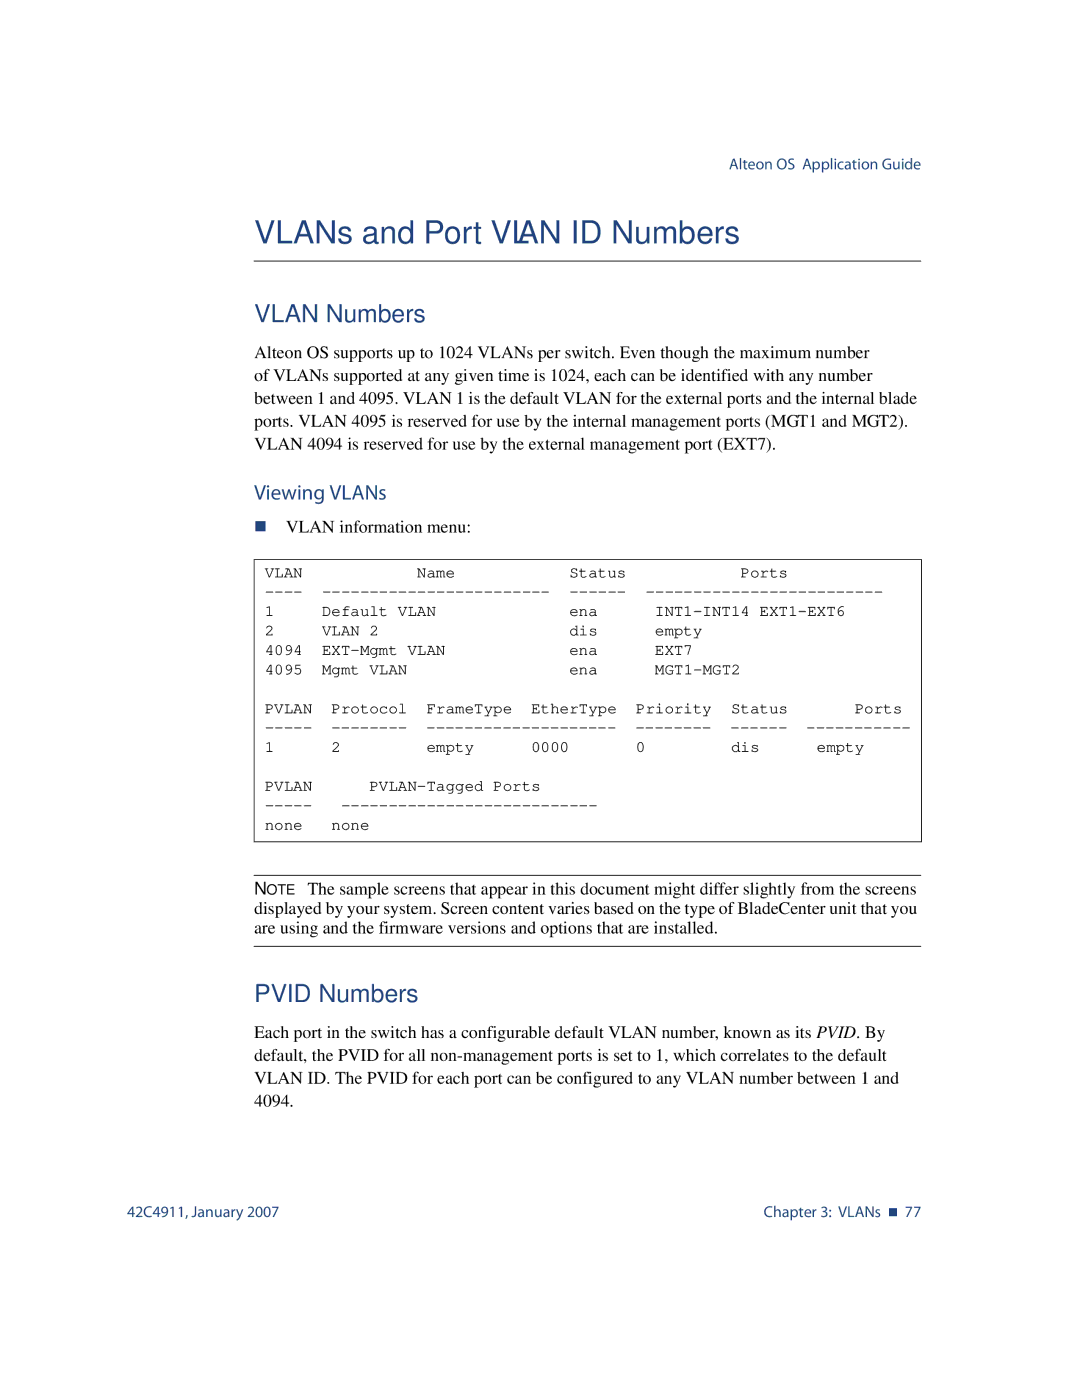 Nortel Networks 42C4911 manual VLANs and Port Vlan ID Numbers, Vlan Numbers, Pvid Numbers, Viewing VLANs 